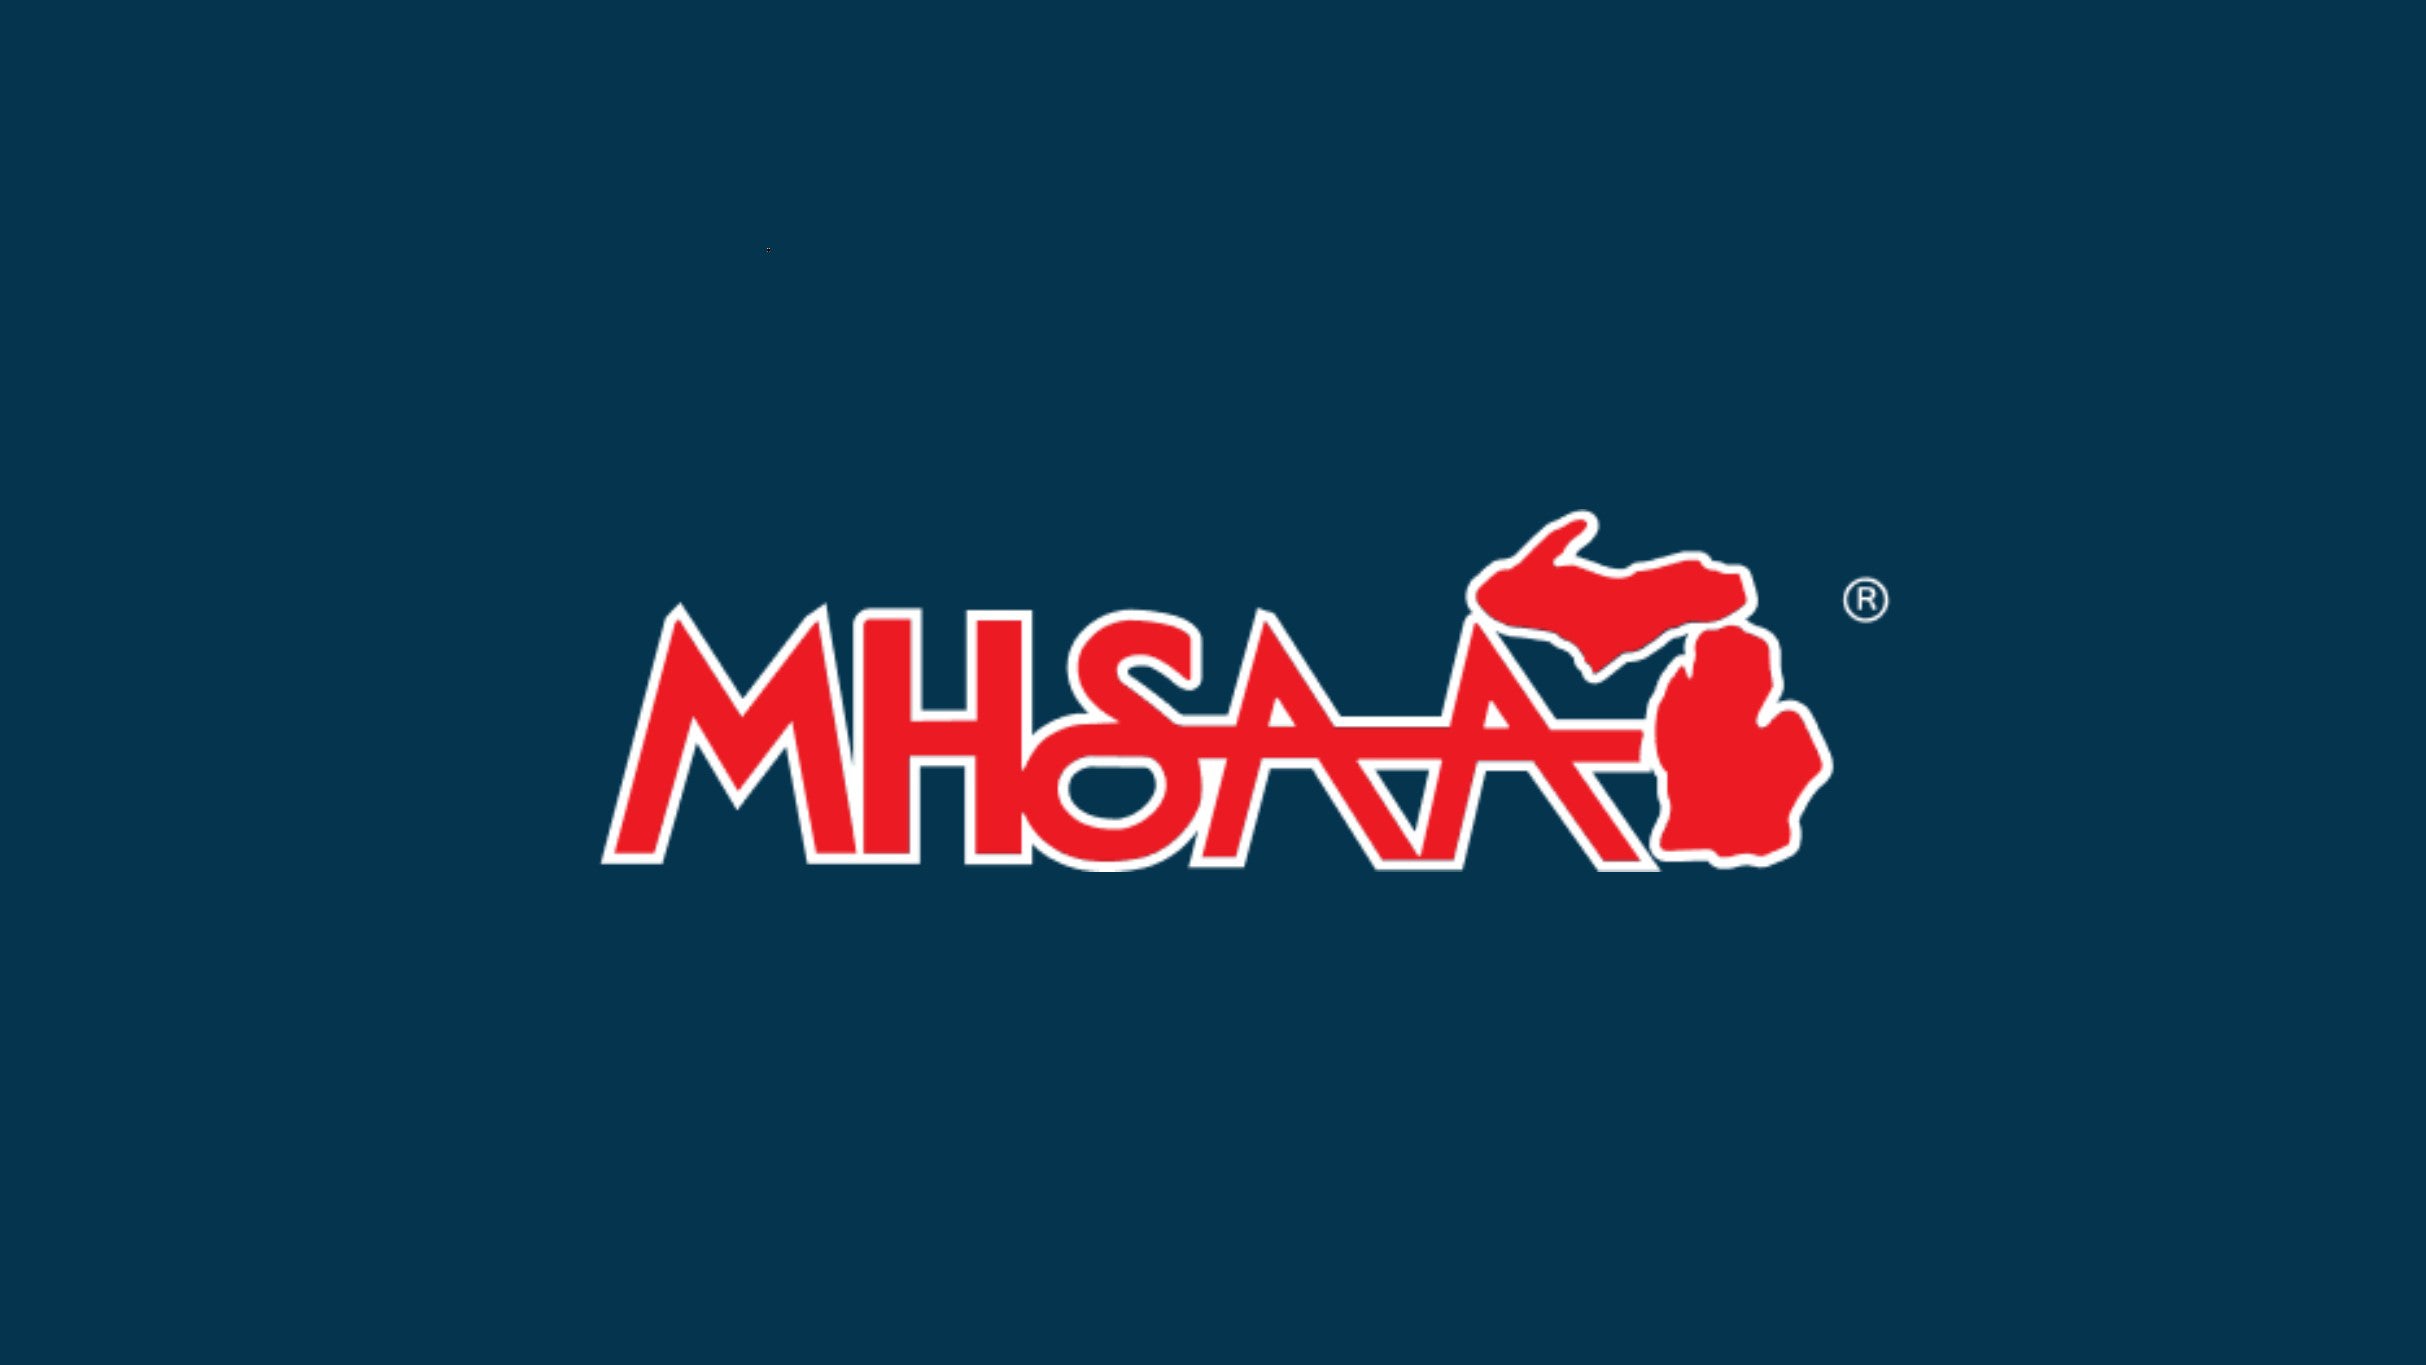 Michigan High School Wrestling Finals - MHSAA presale information on freepresalepasswords.com